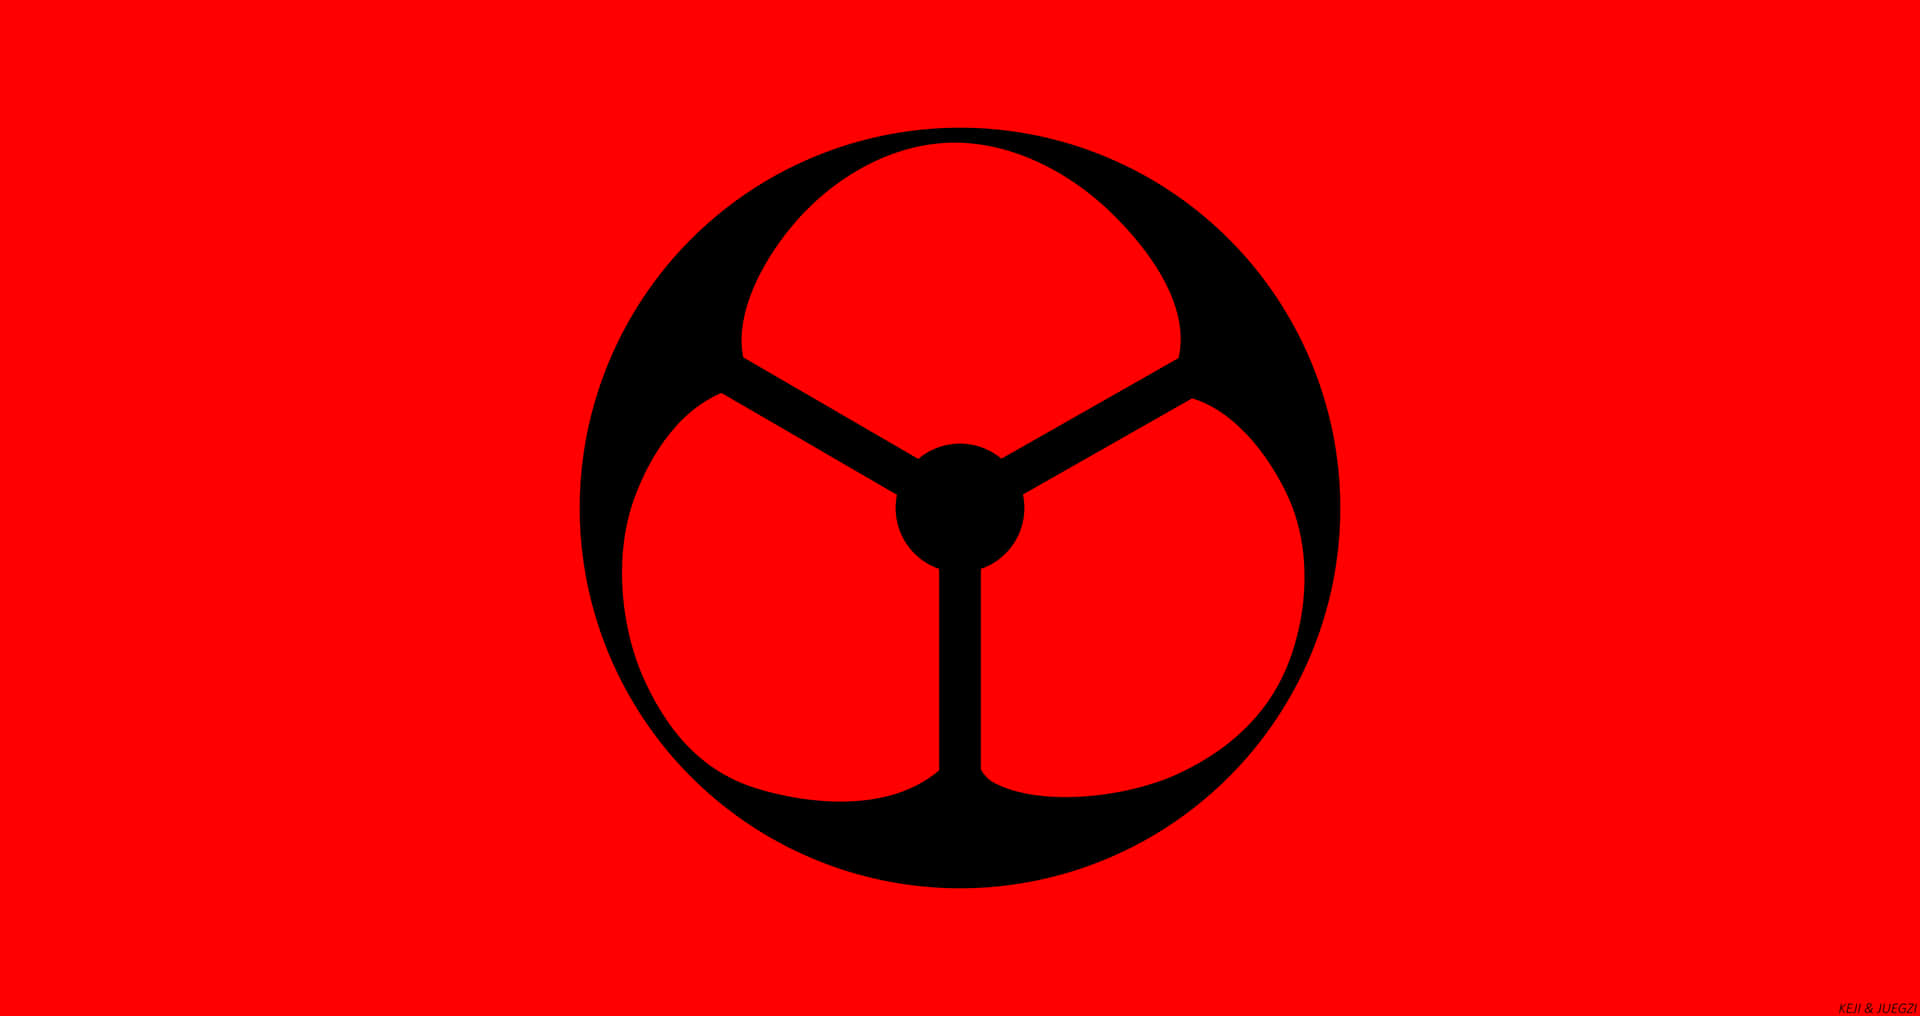 Einschwarzes Und Rotes Logo Auf Einem Roten Hintergrund. Wallpaper